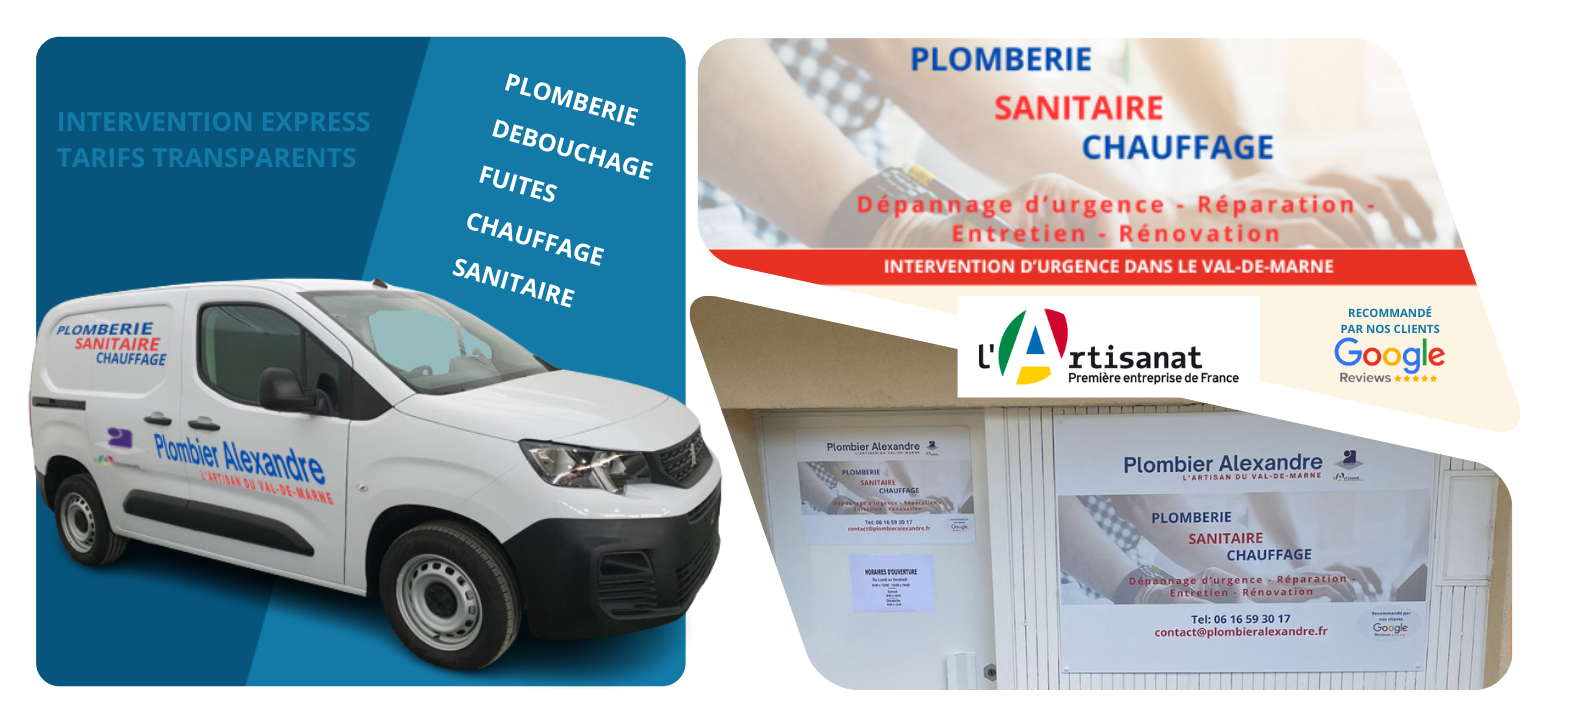 Plombier à Champigny-sur-Marne - Plomberie Alexandre, spécialiste en dépannage, réparation, entretien et rénovation